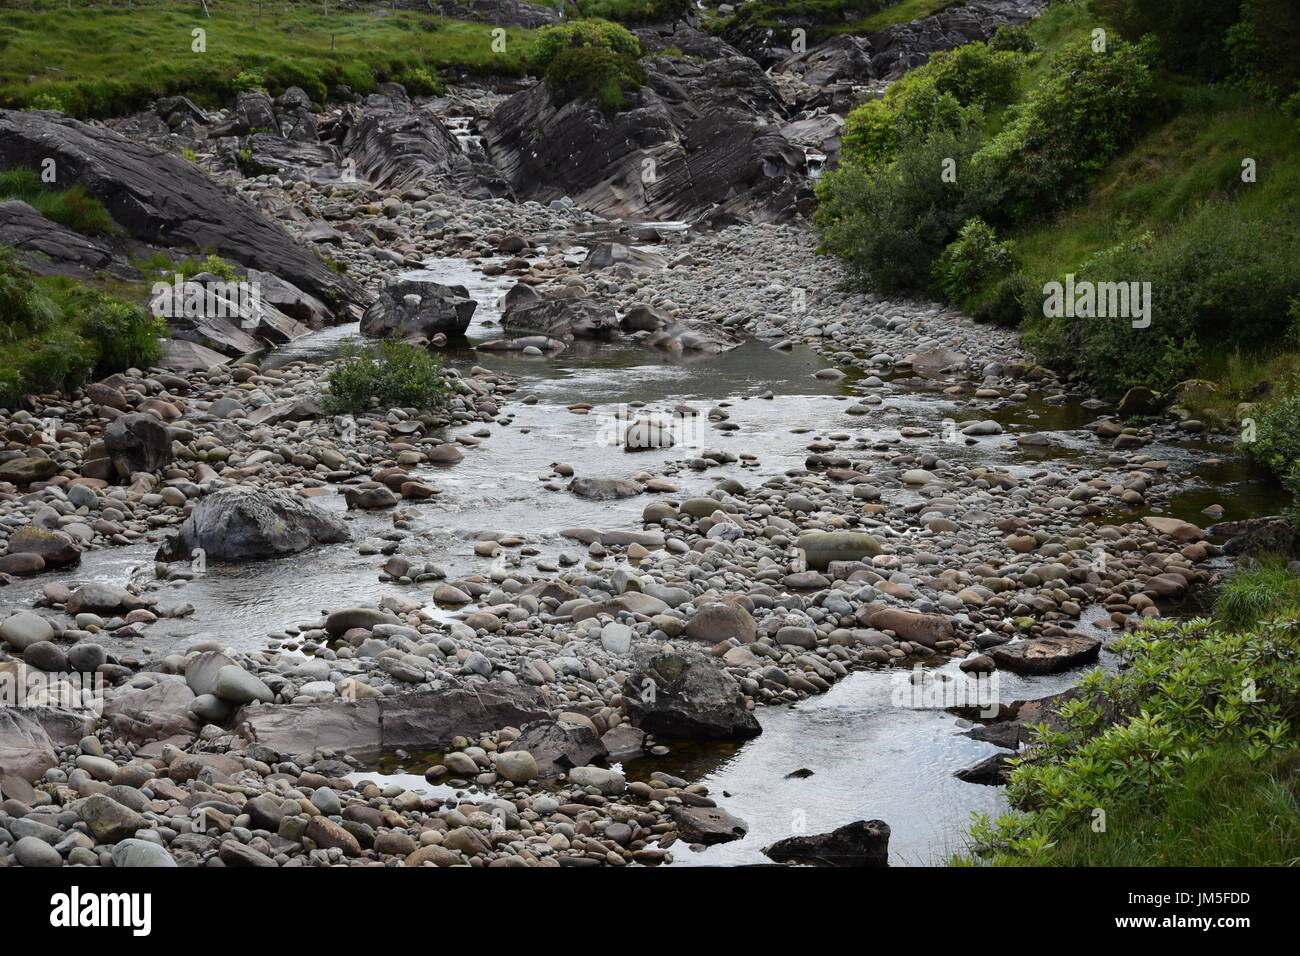 Ruisseau de montagne à côté de la route N59 à proximité d'un pont dans le Glennacally Vallée Erriff, Comté de Mayo, Irlande Banque D'Images